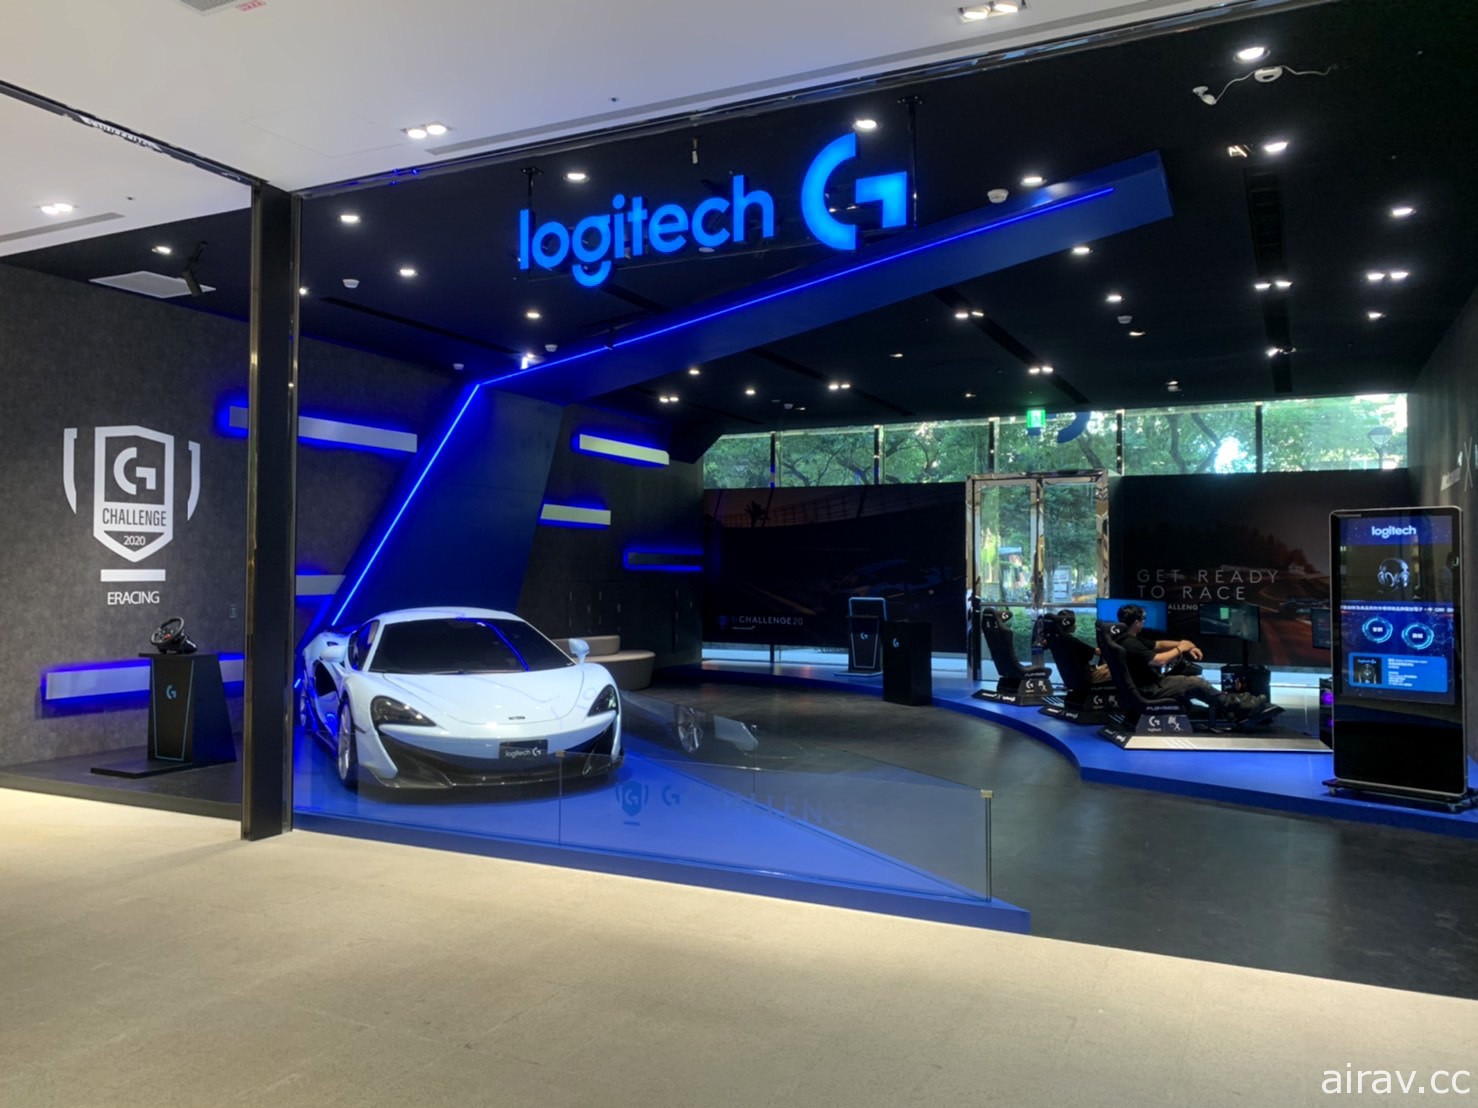 Logitech G 全新賽車駕駛套裝 G923 十月在台開賣 將支援 PS5 主機